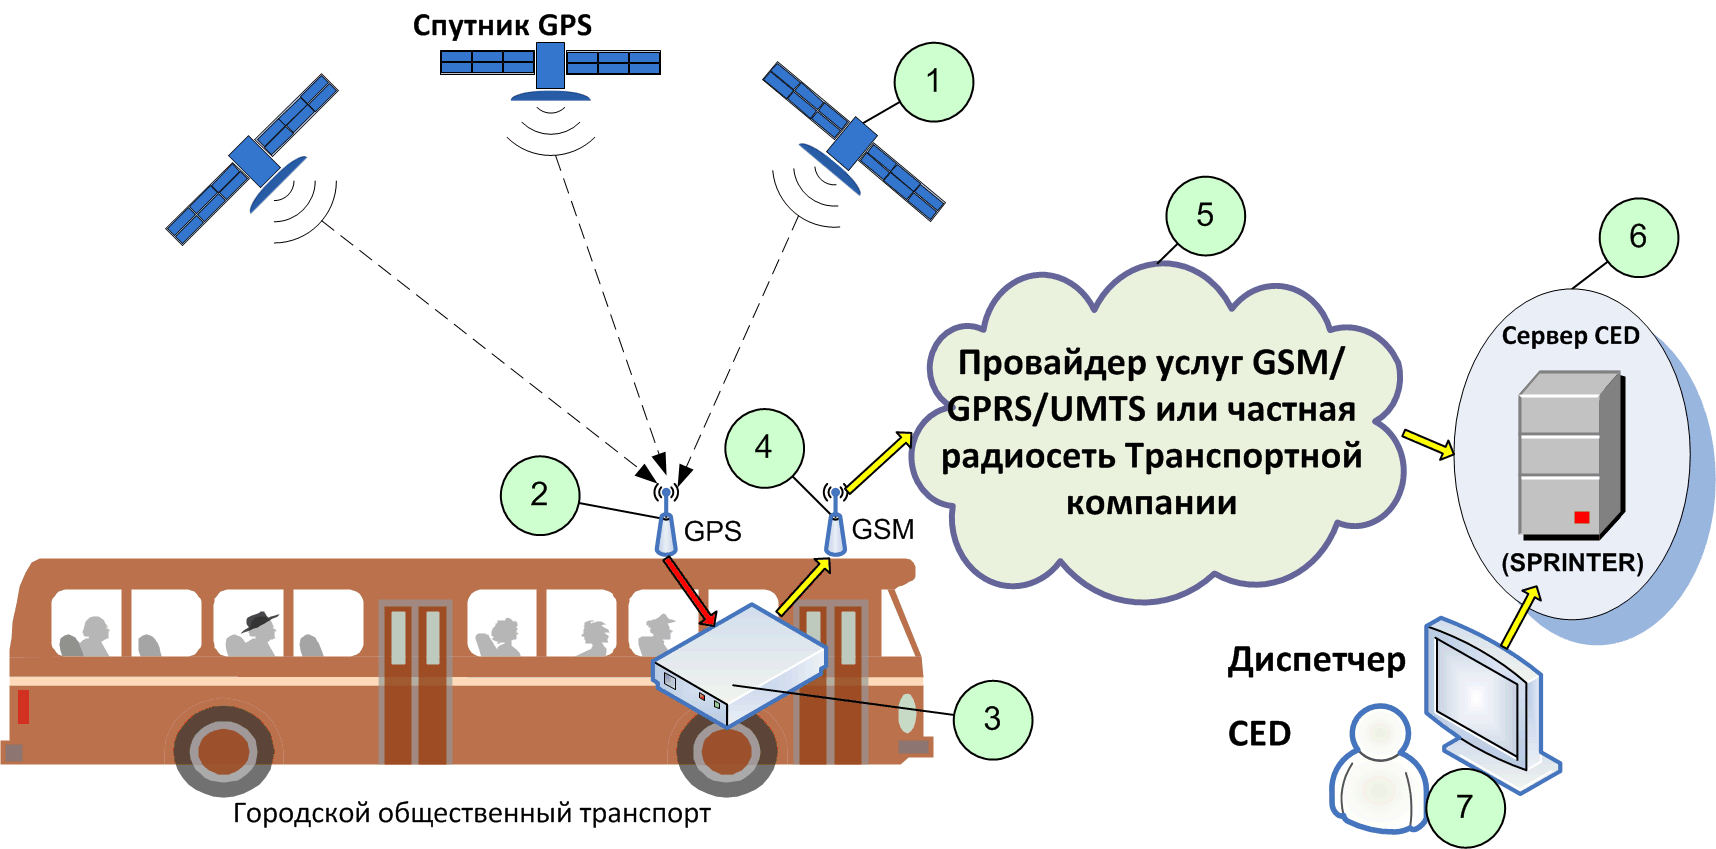 Gps будет работать. Принцип действия спутниковой системы навигации. Принцип работы системы GPS. Принцип действия системы a-GPS. Система спутникового слежения ГЛОНАСС.